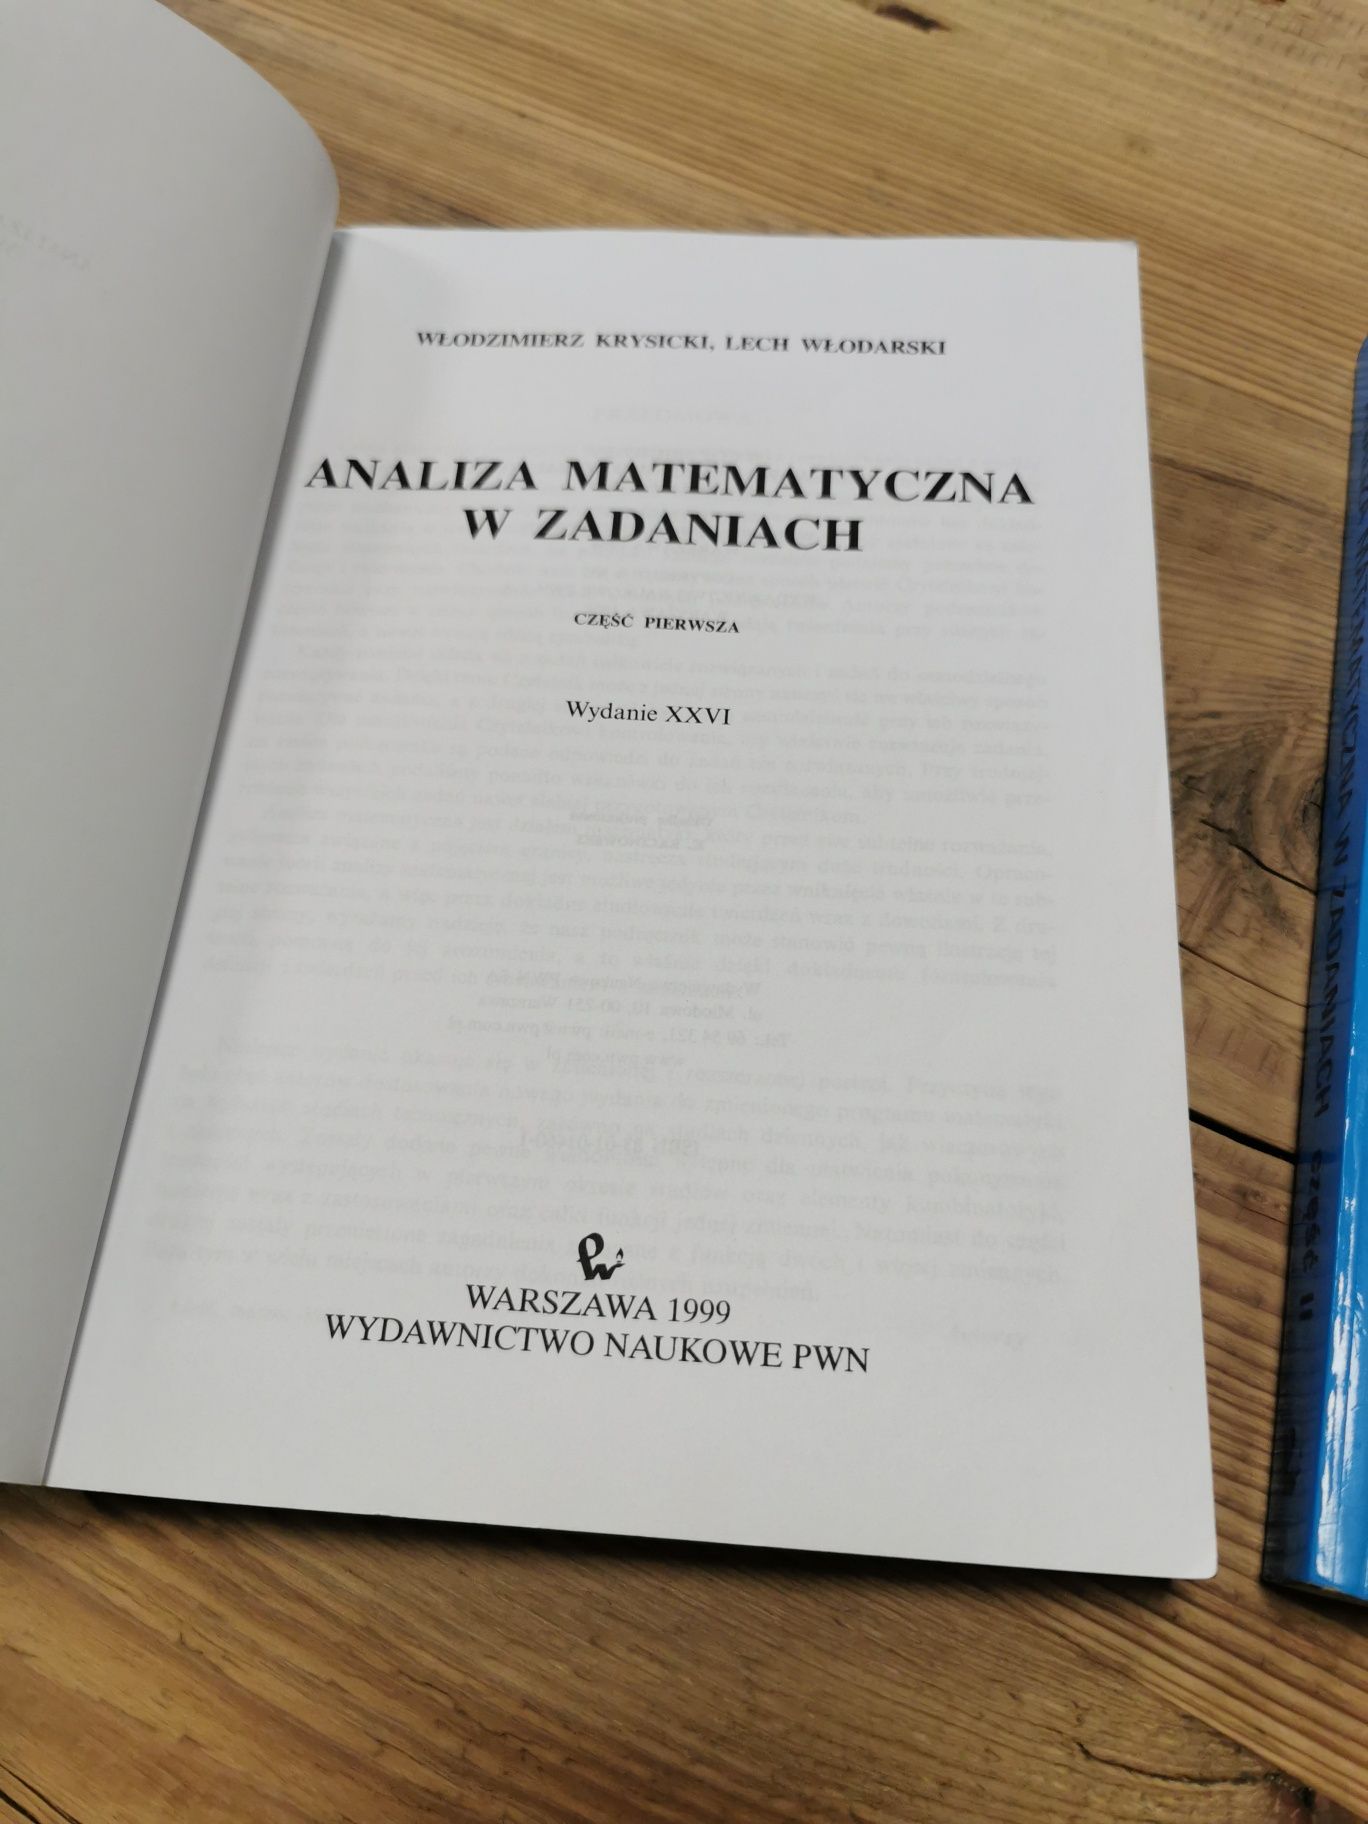 Analiza matematyczna w zadaniach - Krysicki, Włodarski